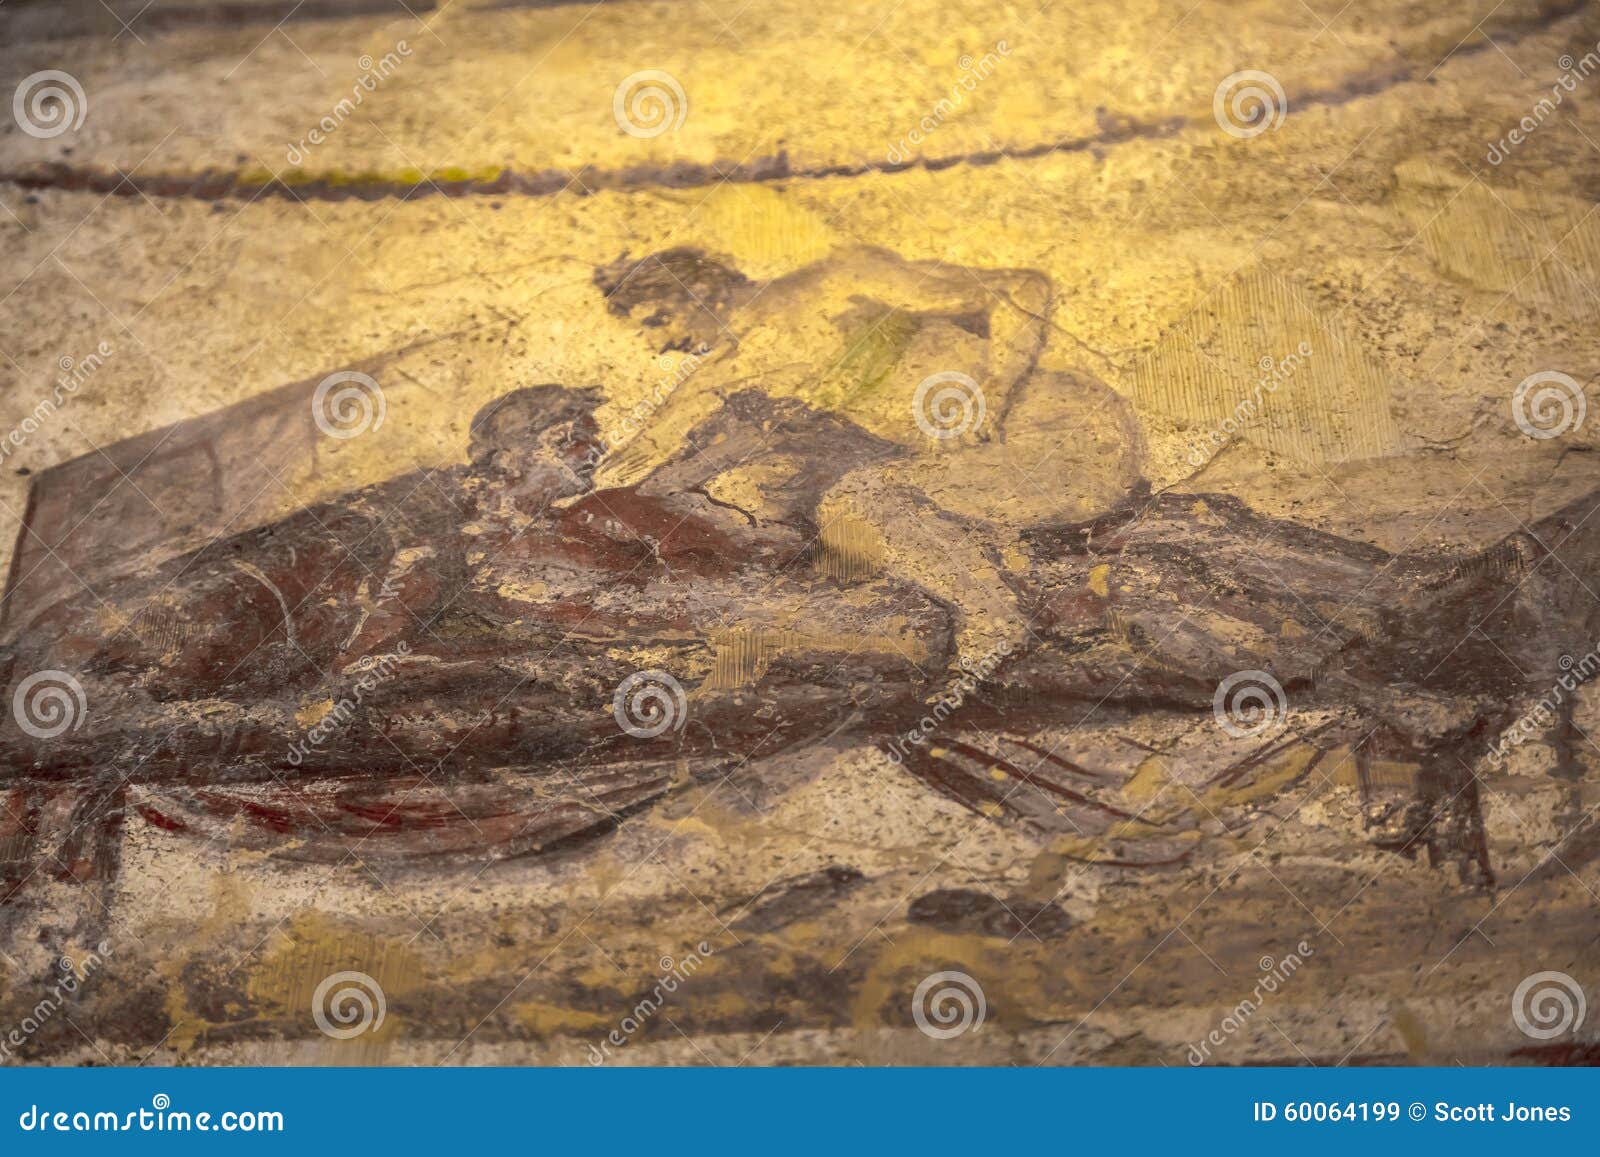 Art roman erotic Pompeii Heats